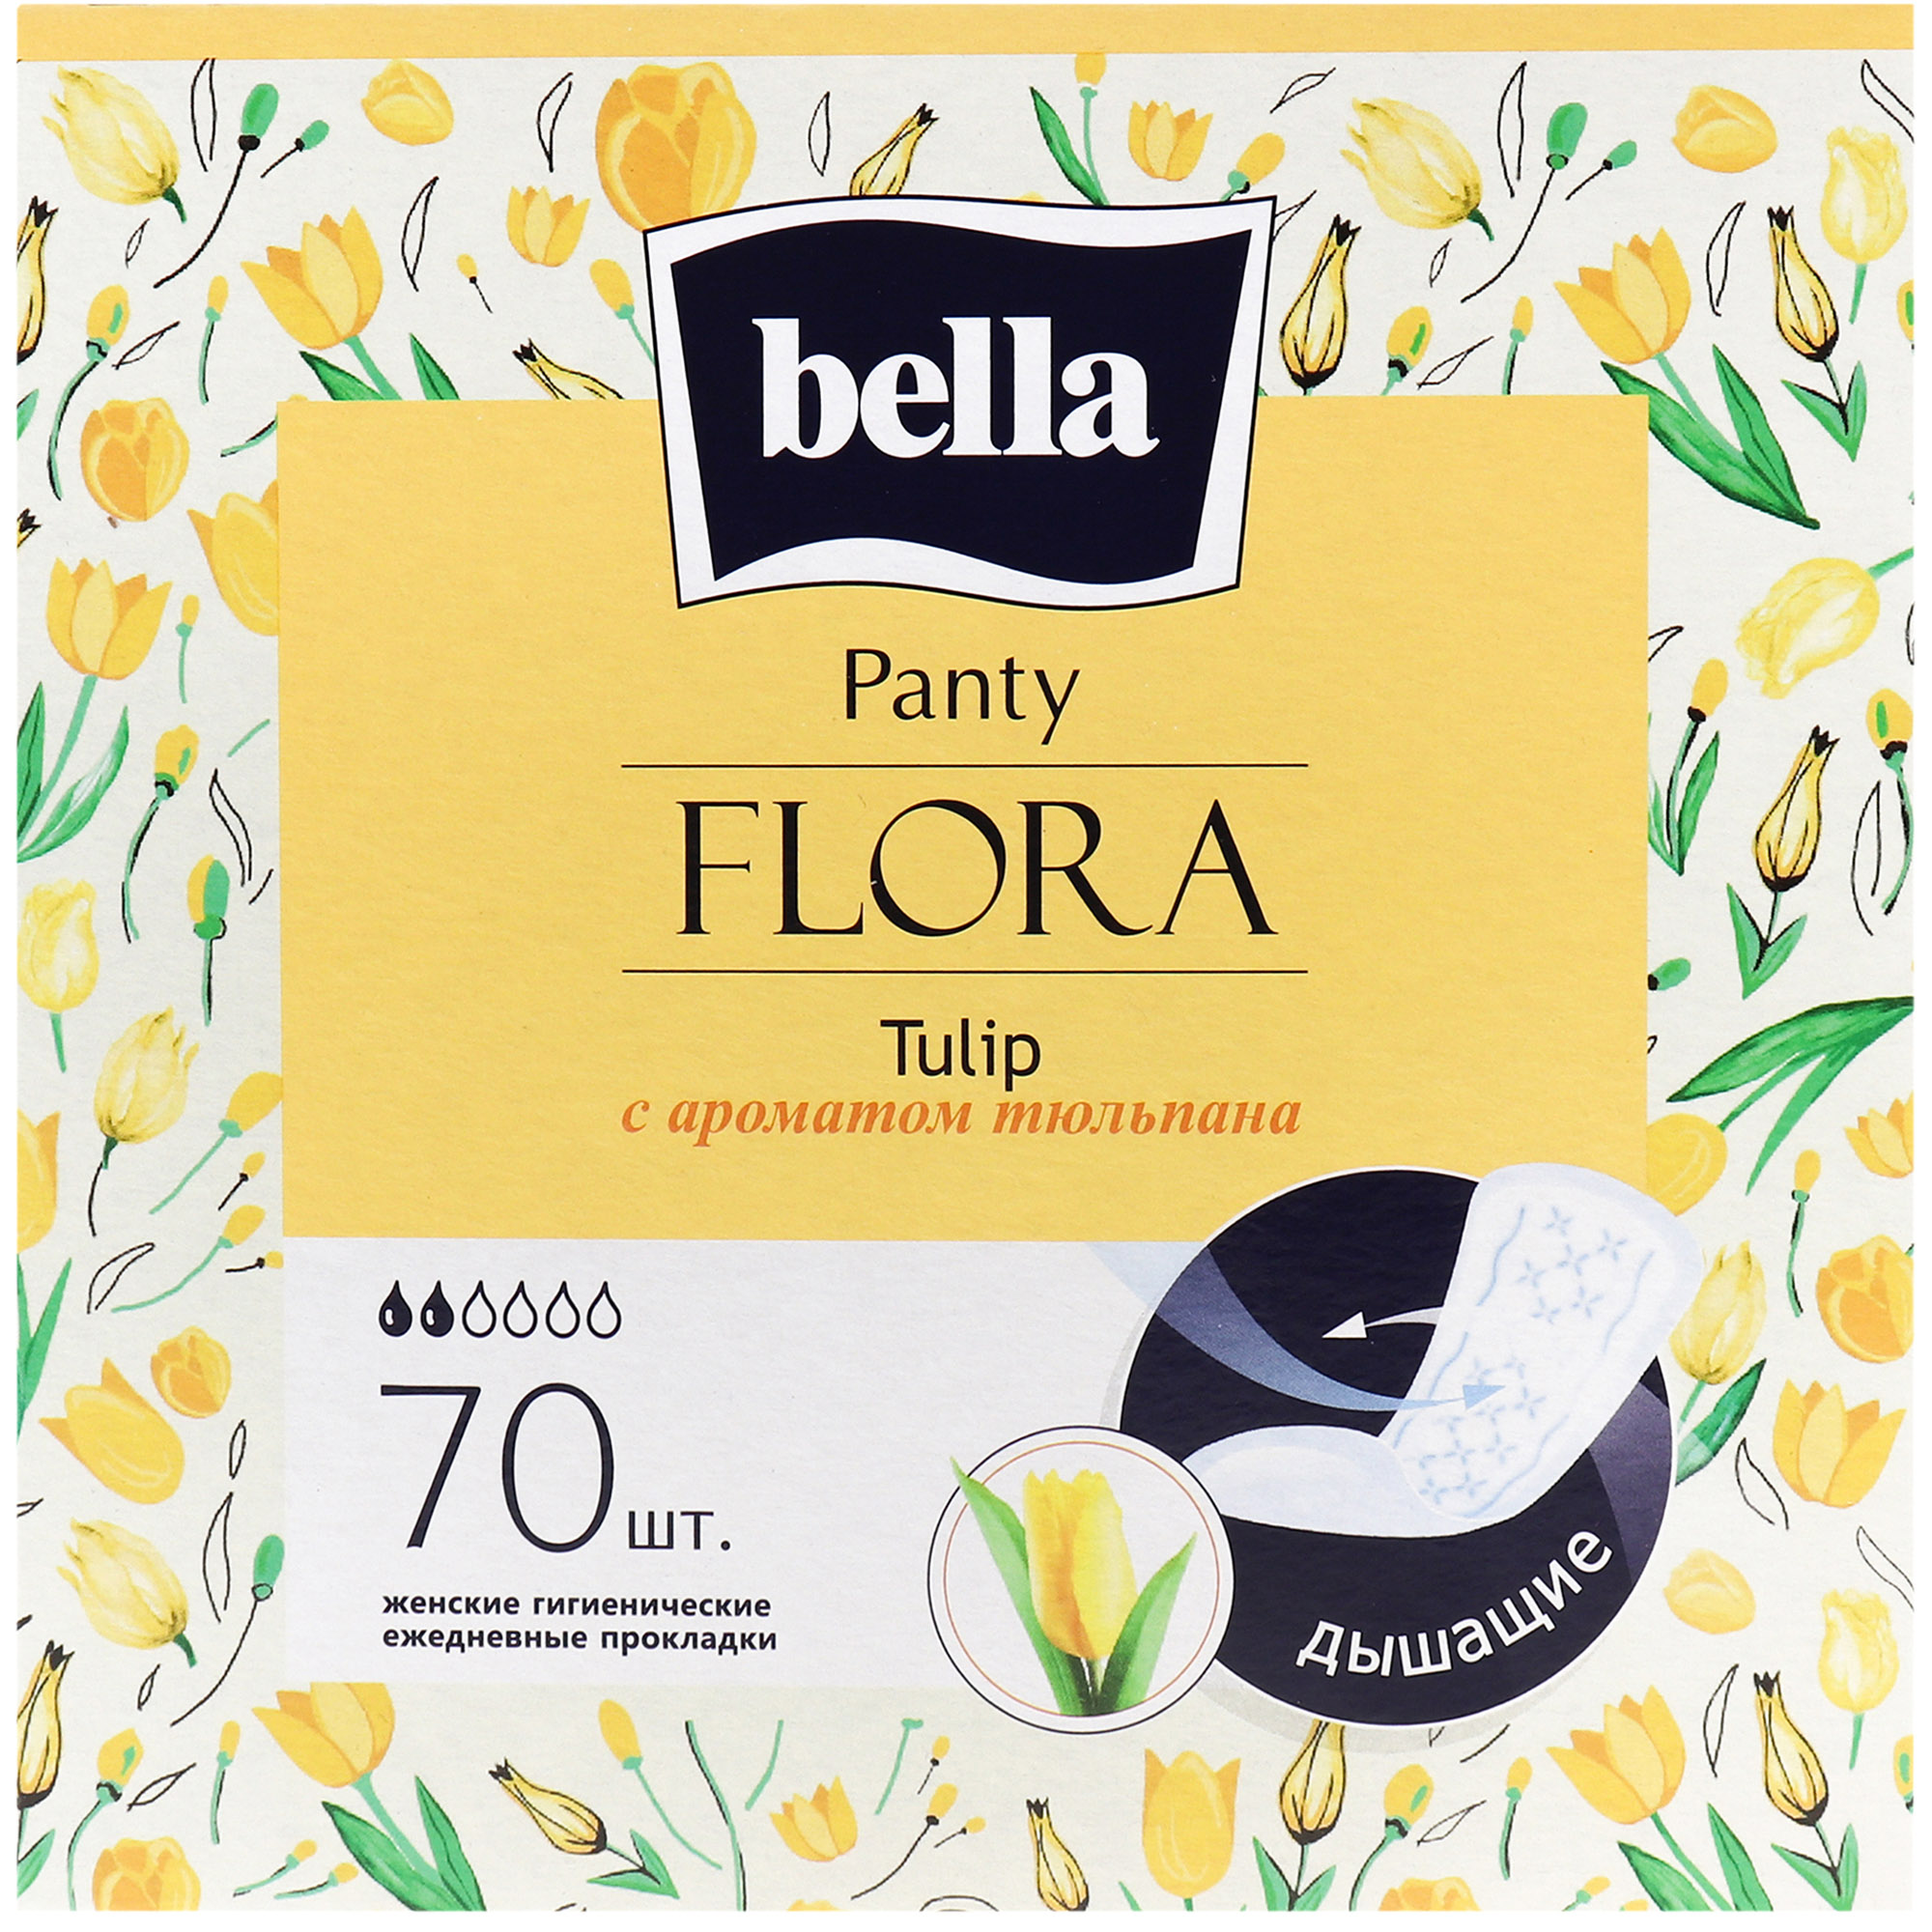 Щоденні прокладки Bella Panty Flora Tulip 70 ш. - фото 1